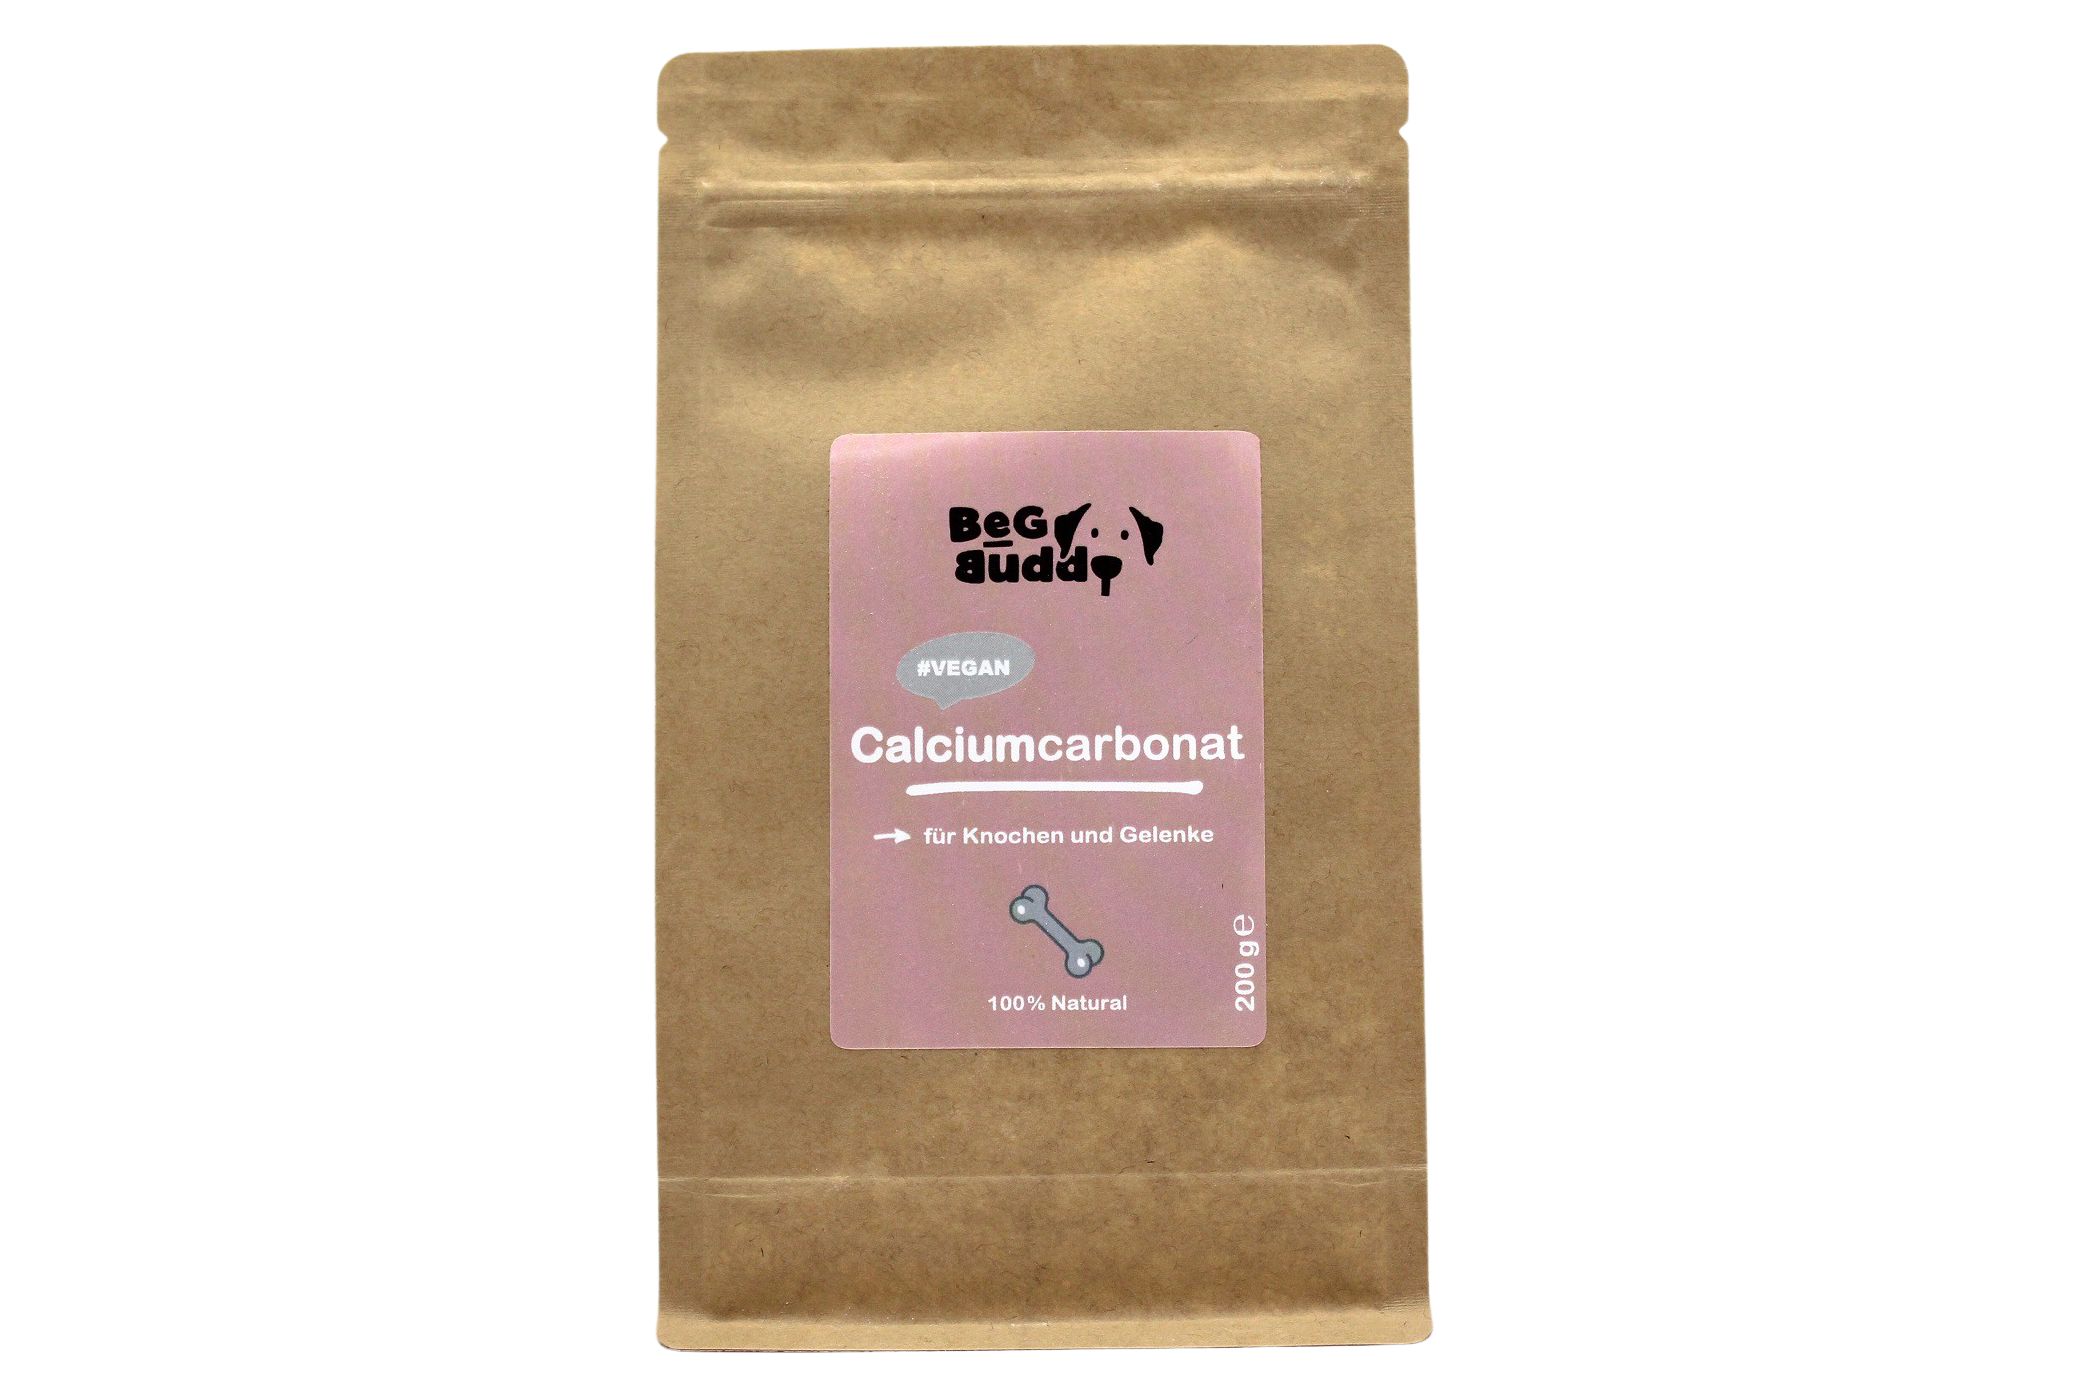 BeG Buddy Calciumcarbonat für Knochen & Gelenke, Barfzusatz Hund, Pulver